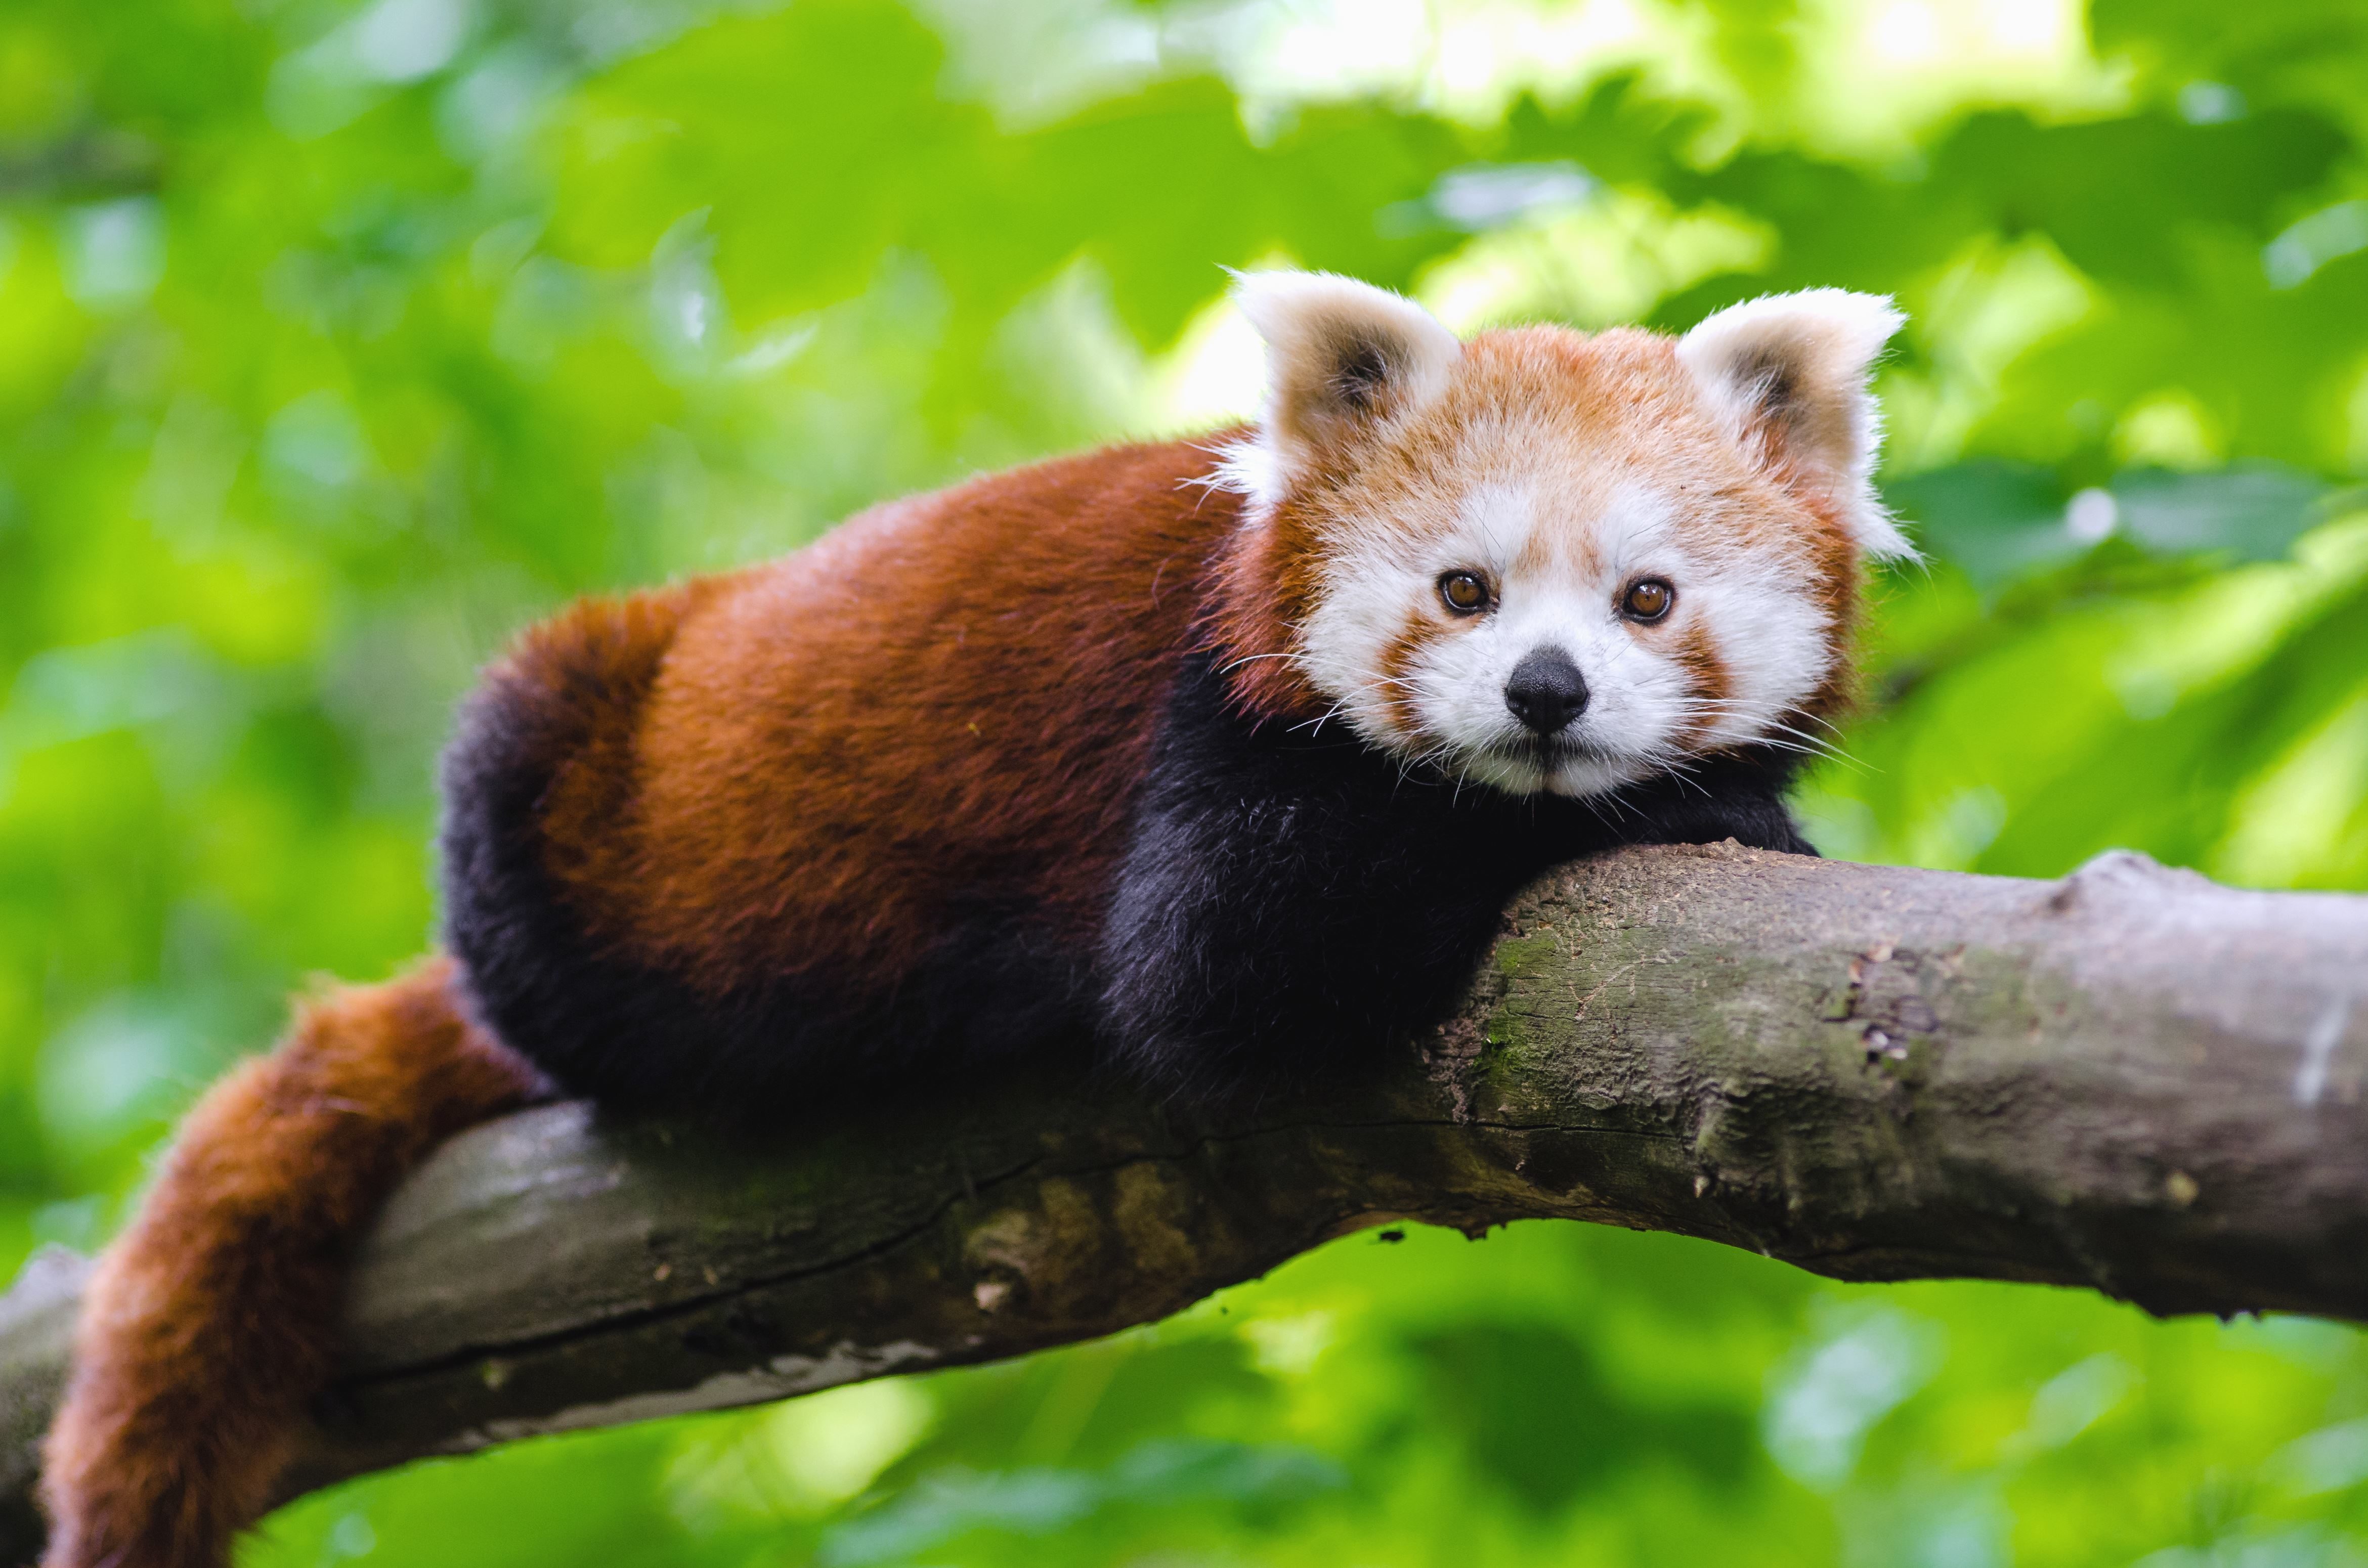 Besplatna slika: Panda, divlje životinje, životinja, drveća, slatka